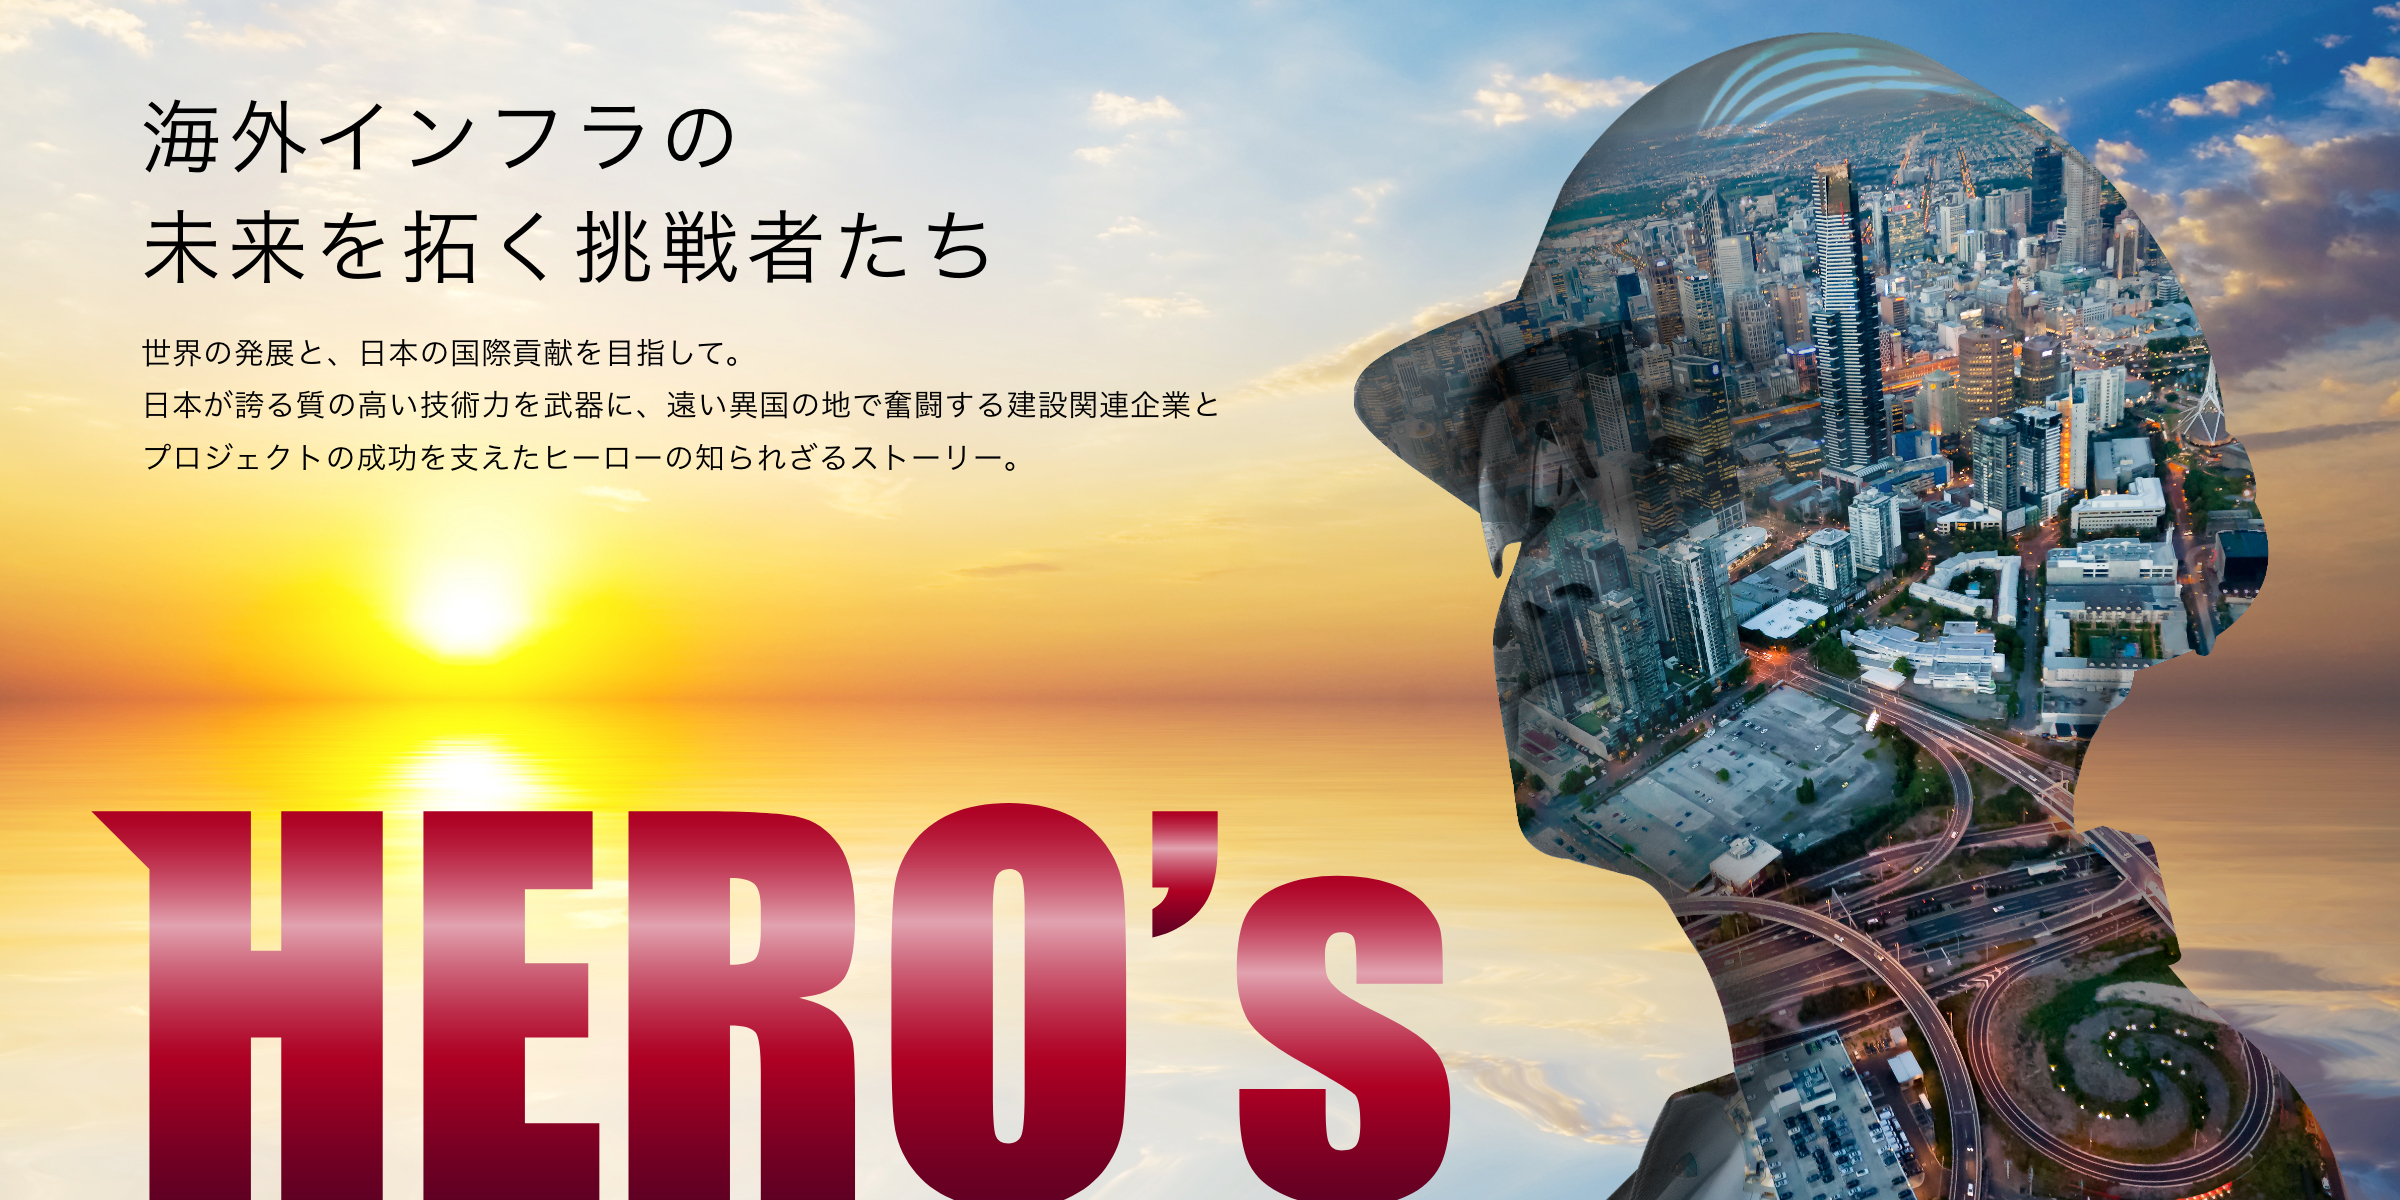 海外インフラの未来を拓く挑戦者たち 世界の発展と、日本の国際貢献を目指して。日本が誇る質の高い技術力を武器に、遠い異国の地で奮闘する建設関連企業とプロジェクトの成功を支えたヒーローの知られざるストーリー。HERO's